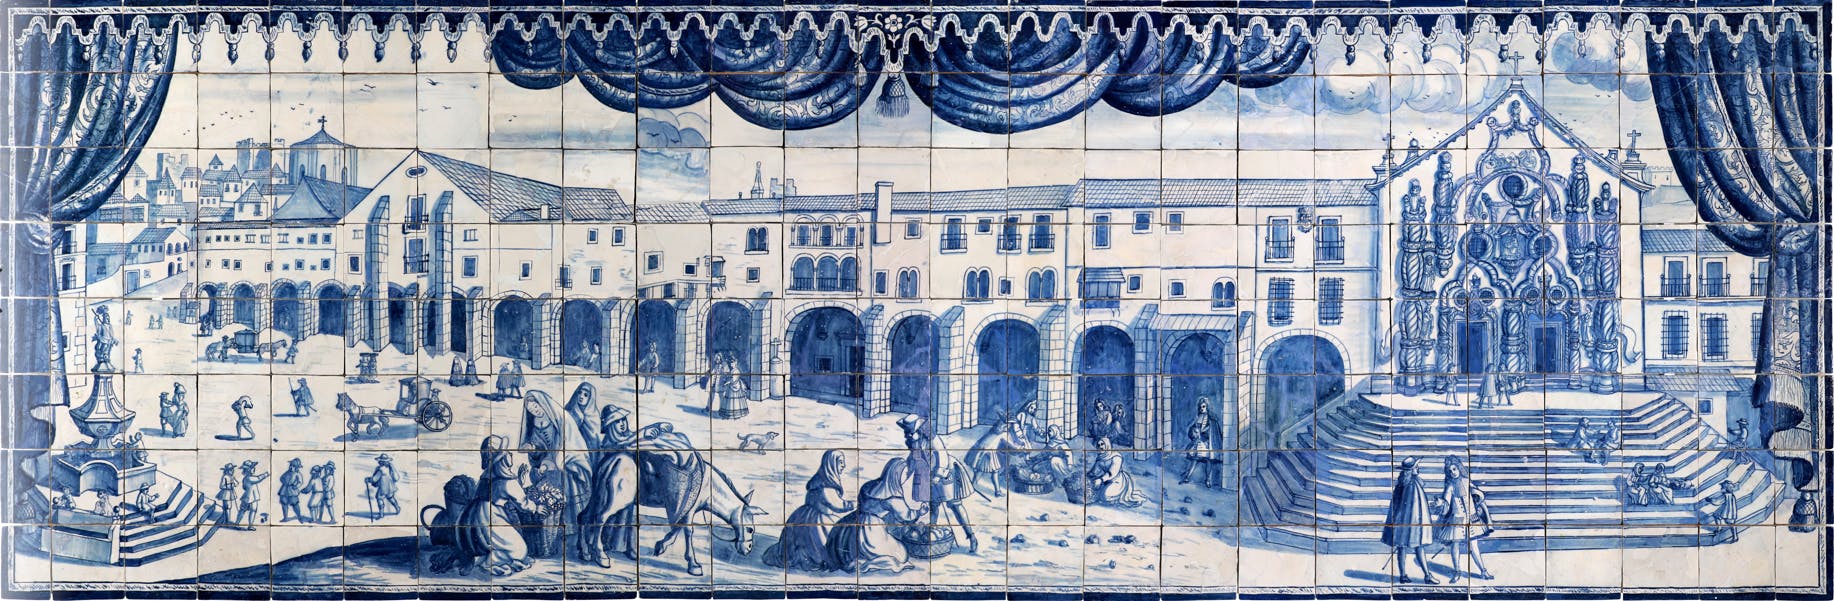 Painel de azulejos figurativo, datado dos inícios do século XVIII, proveniente de oficina de Lisboa. Colecção do Museu de Lisboa /Câmara Municipal de Lisboa – EGEAC